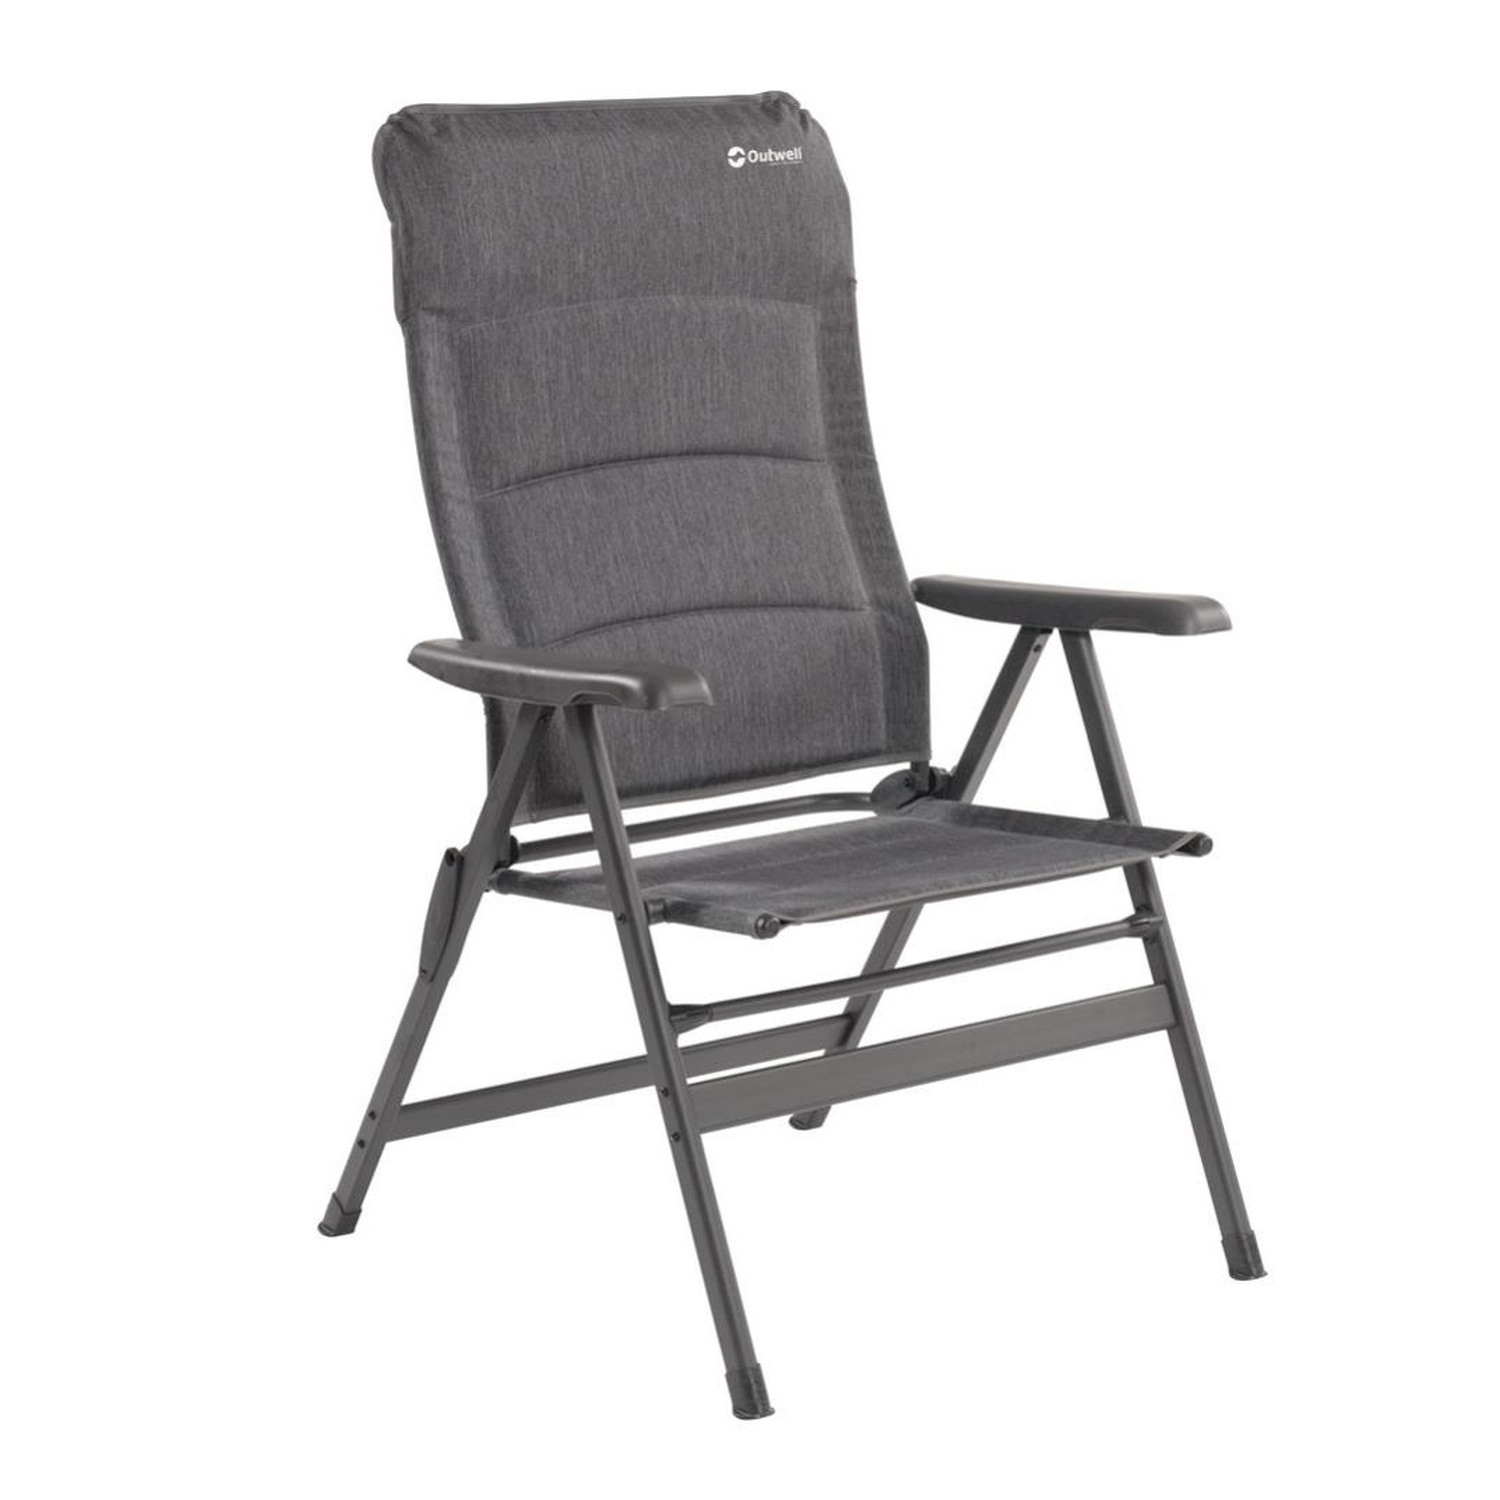 Складной стул складное кресло. Outwell кресло. Стул Outwell. 470348 Кресло складное туристическое Chair Outwell. Outwell кресло складное.